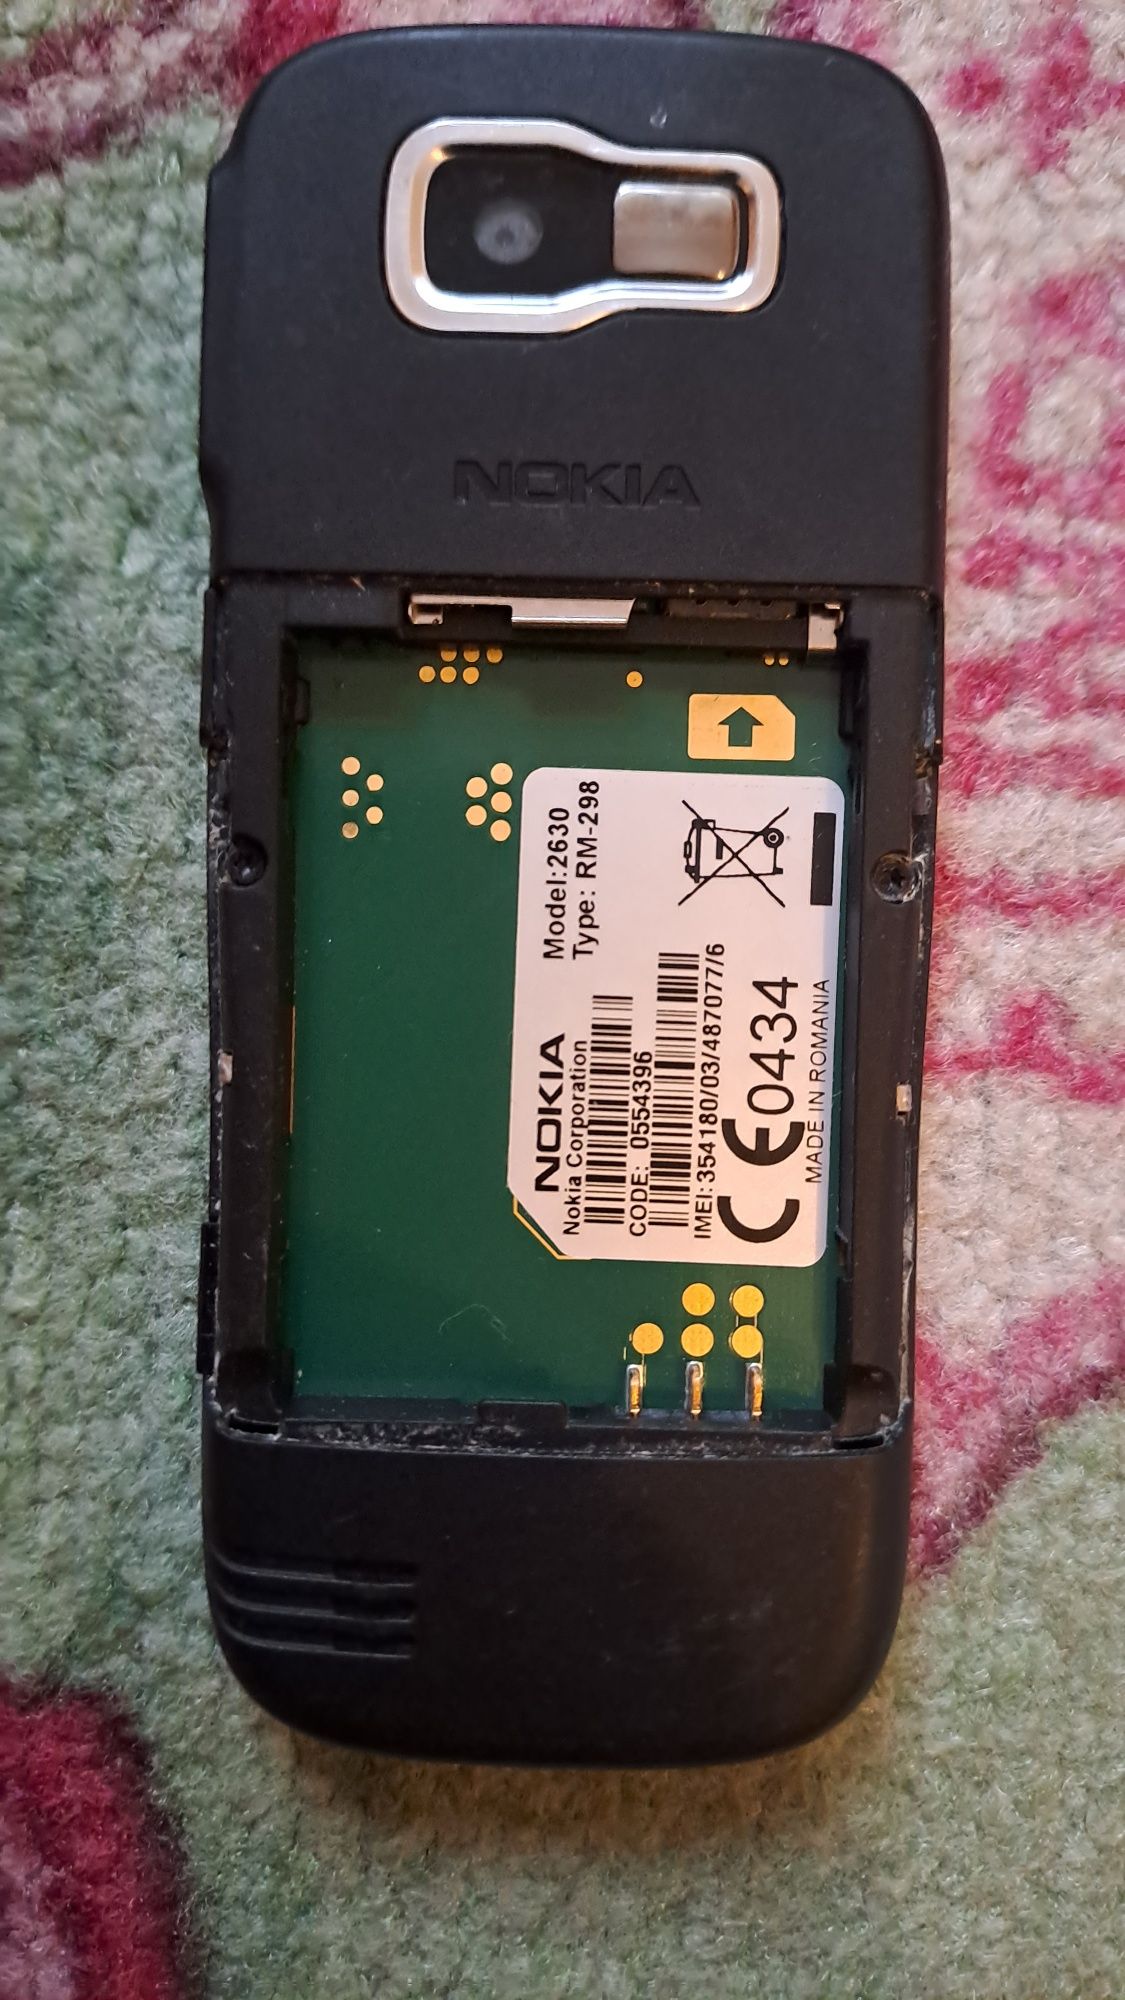 Nokia 2630 Nokia